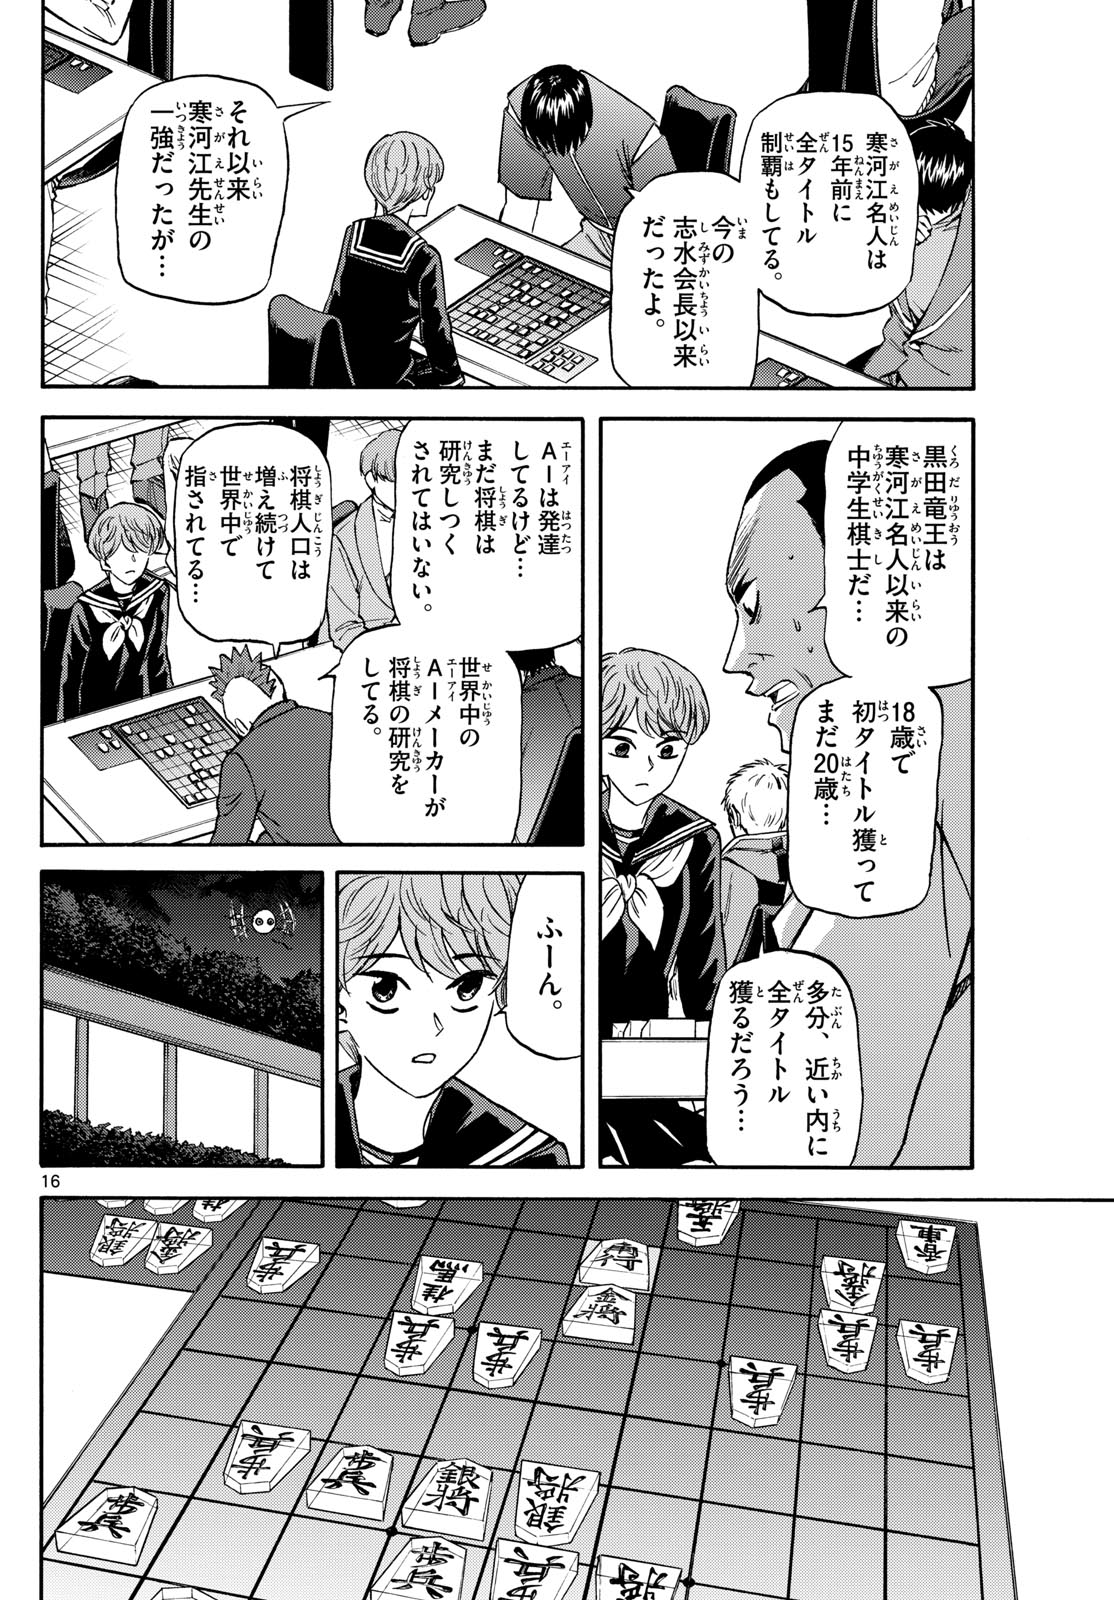 Tatsu to Ichigo - Chapter 185 - Page 16